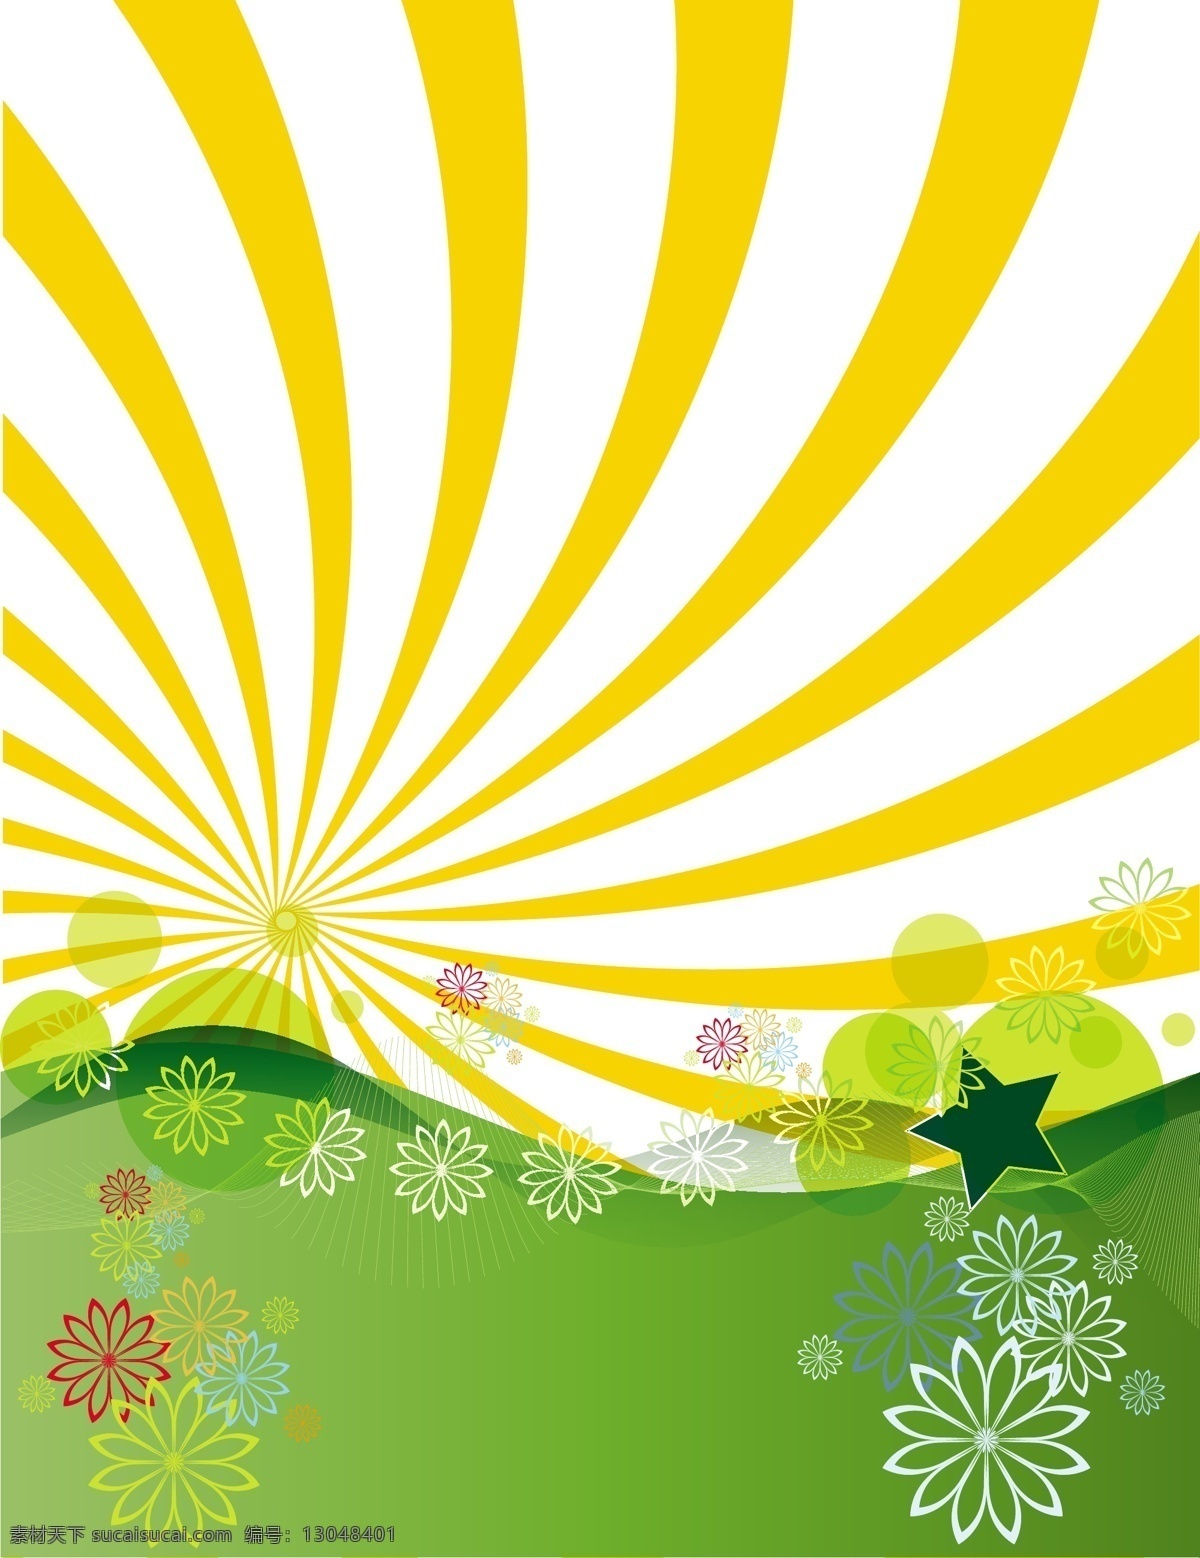 免费矢量风景 创意 绿 免费psd 春天夏天 闪亮的 黄色 youful 令人兴奋的 吸引人的 免费载体 自由 ps 图象处理 软件 载体 矢量图